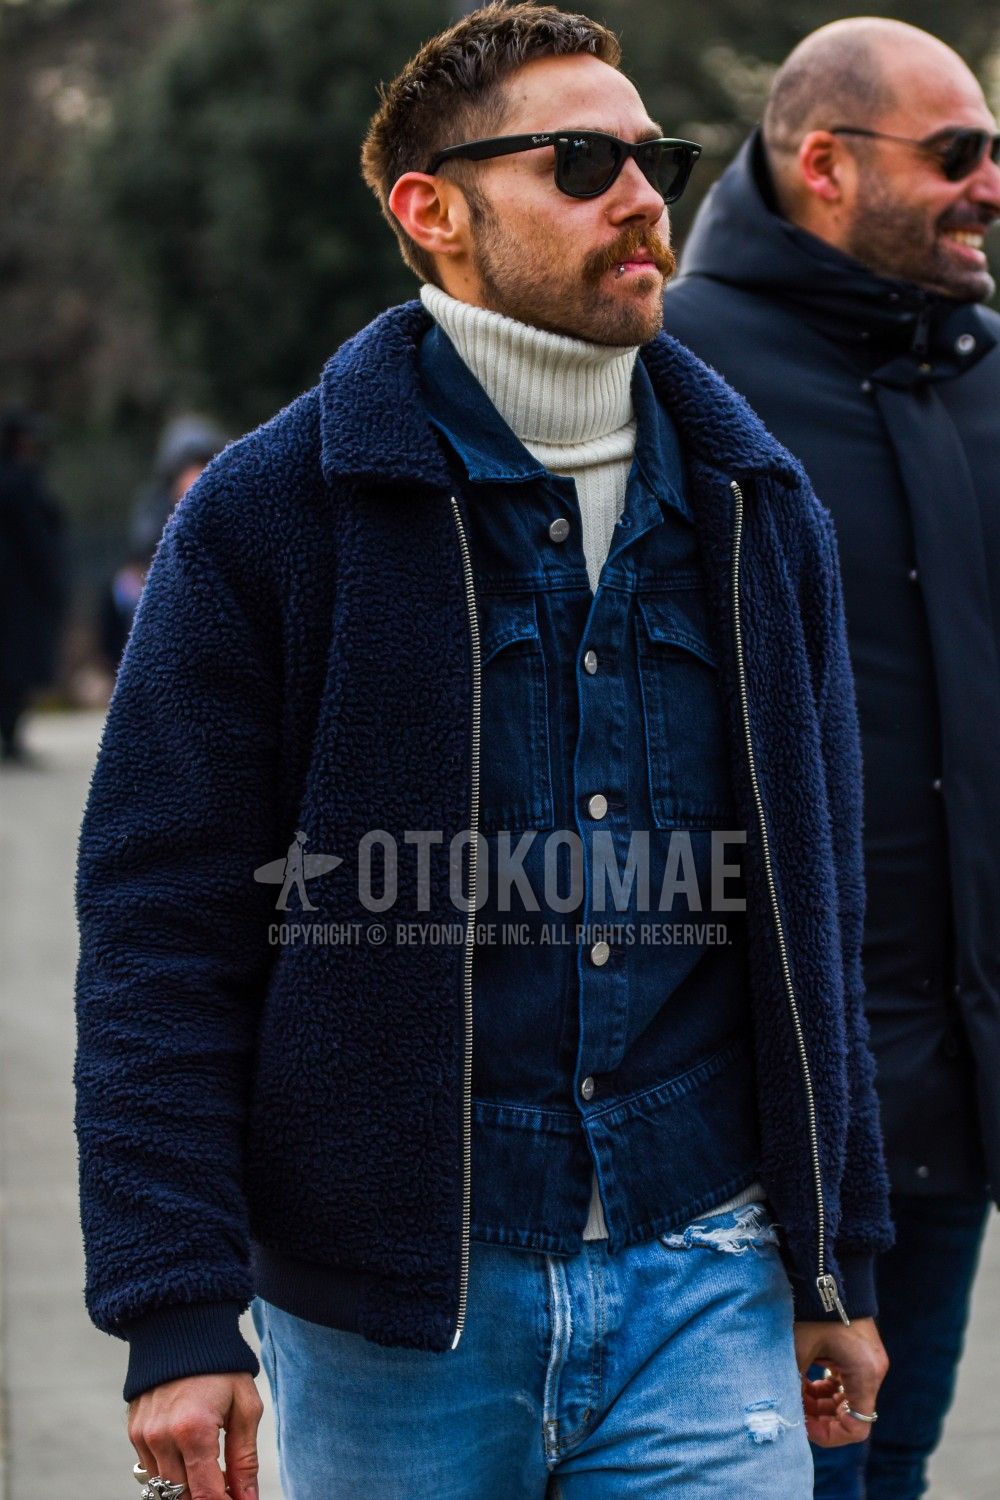 フリースジャケット 特集 秋冬らしさがグッと増すオススメ品6選 メンズファッションメディア Otokomae 男前研究所